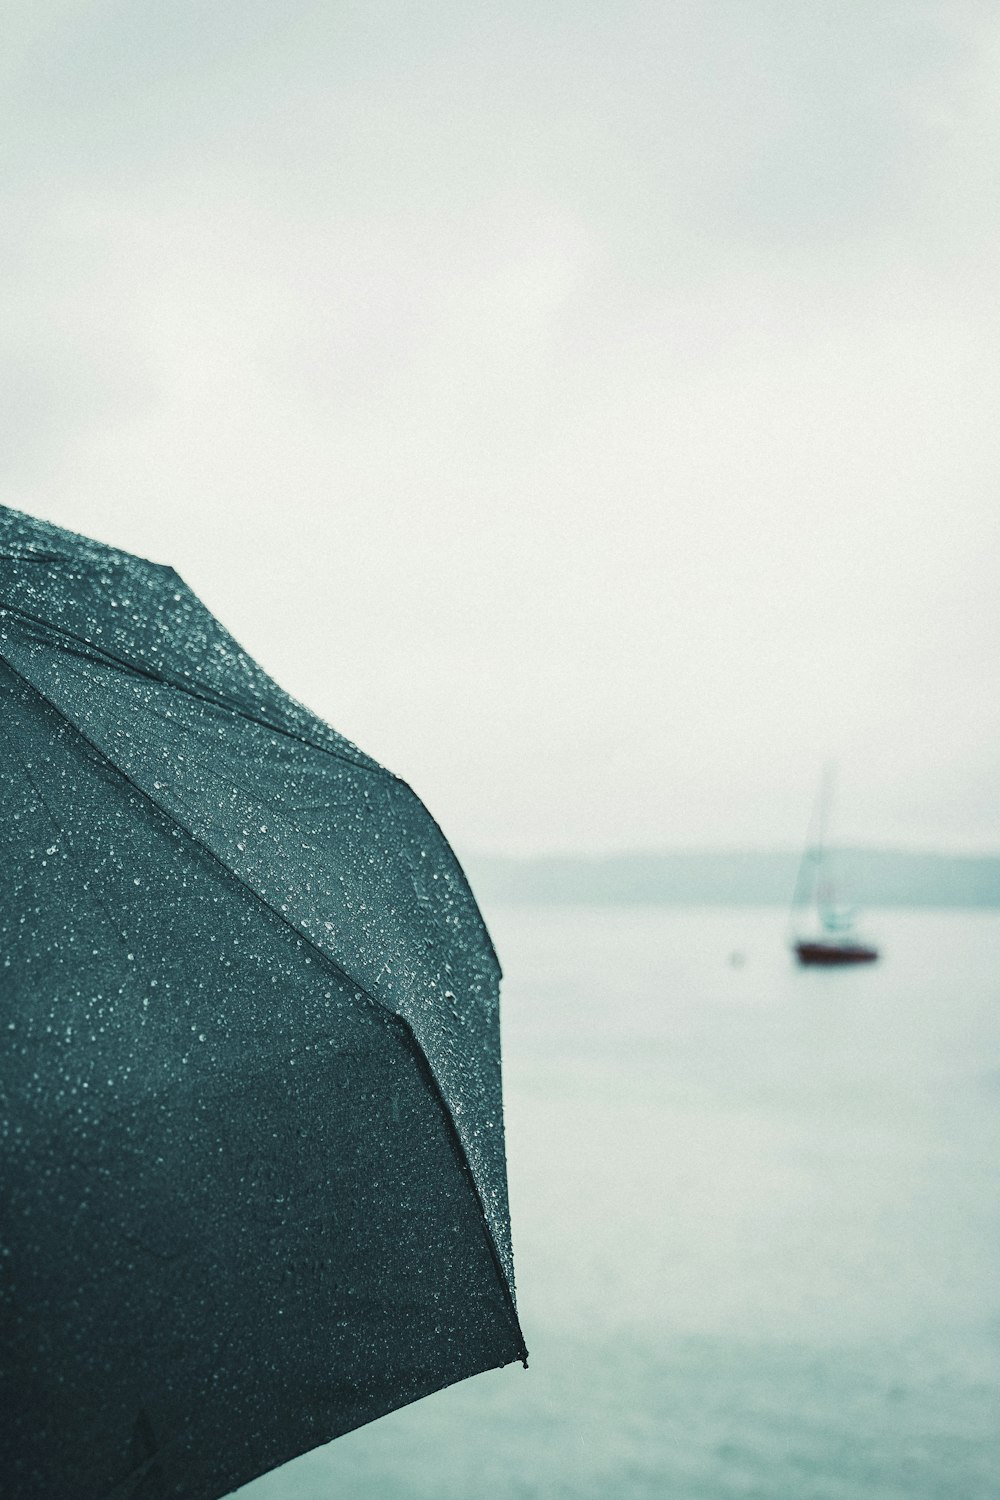 guarda-chuva preto perto do corpo de água durante o dia